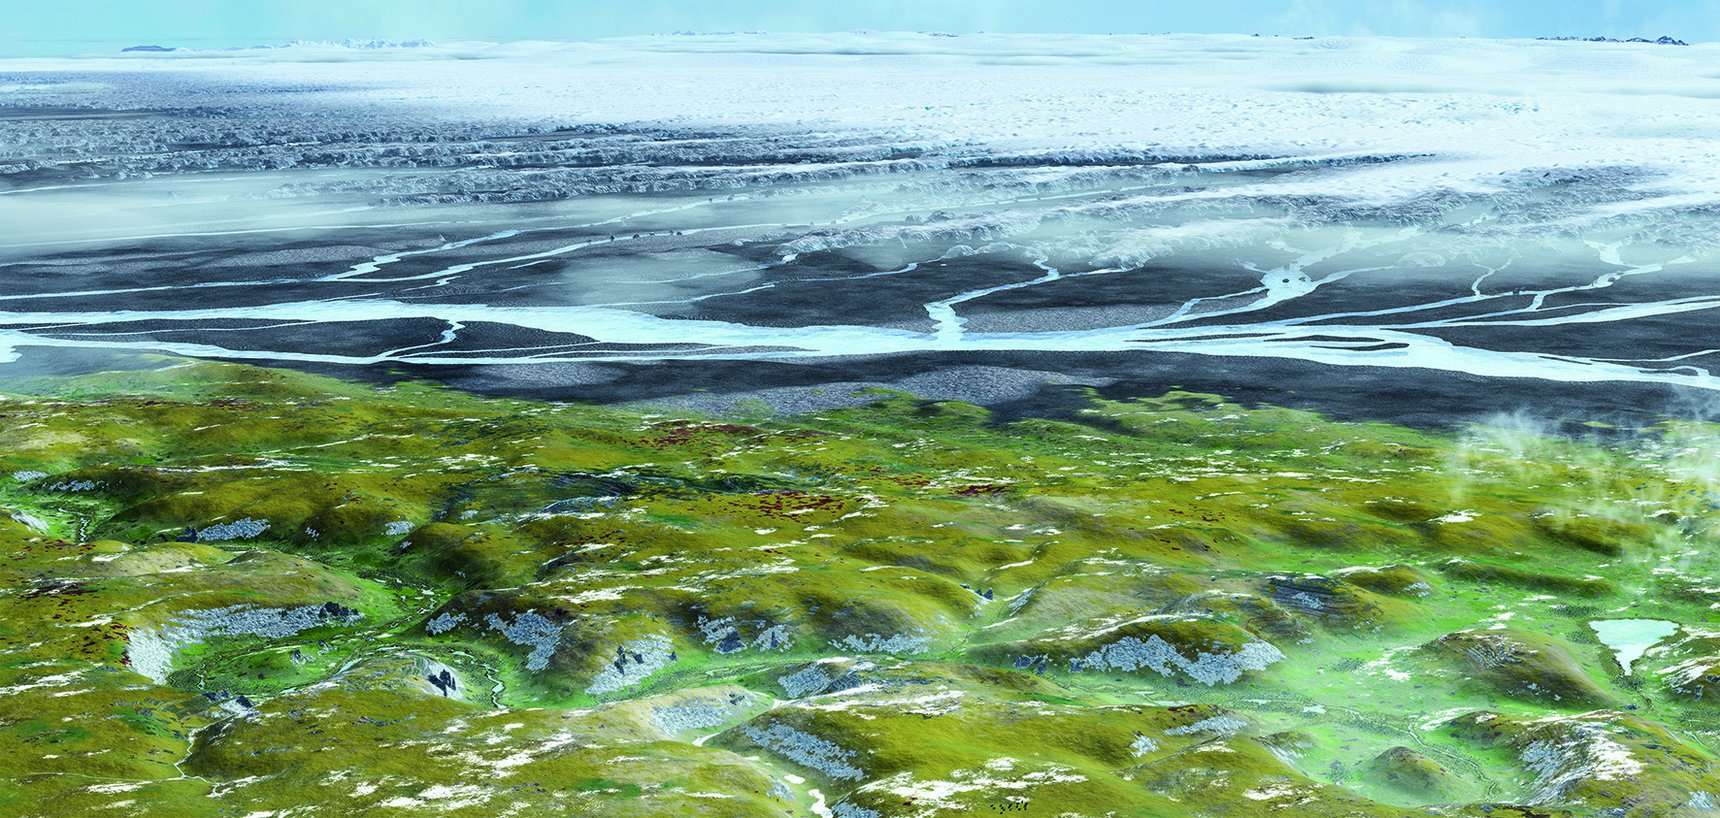 Rekonstruierte Eiszeit-Landschaft der Schwäbischen Alb mit den Alpengletschern im Hintergrund. Das Achtal ist im Vordergrund zu sehen. Die Grafik wird als Wandbild im Urgeschichtlichen Museum Blaubeuren präsentiert.